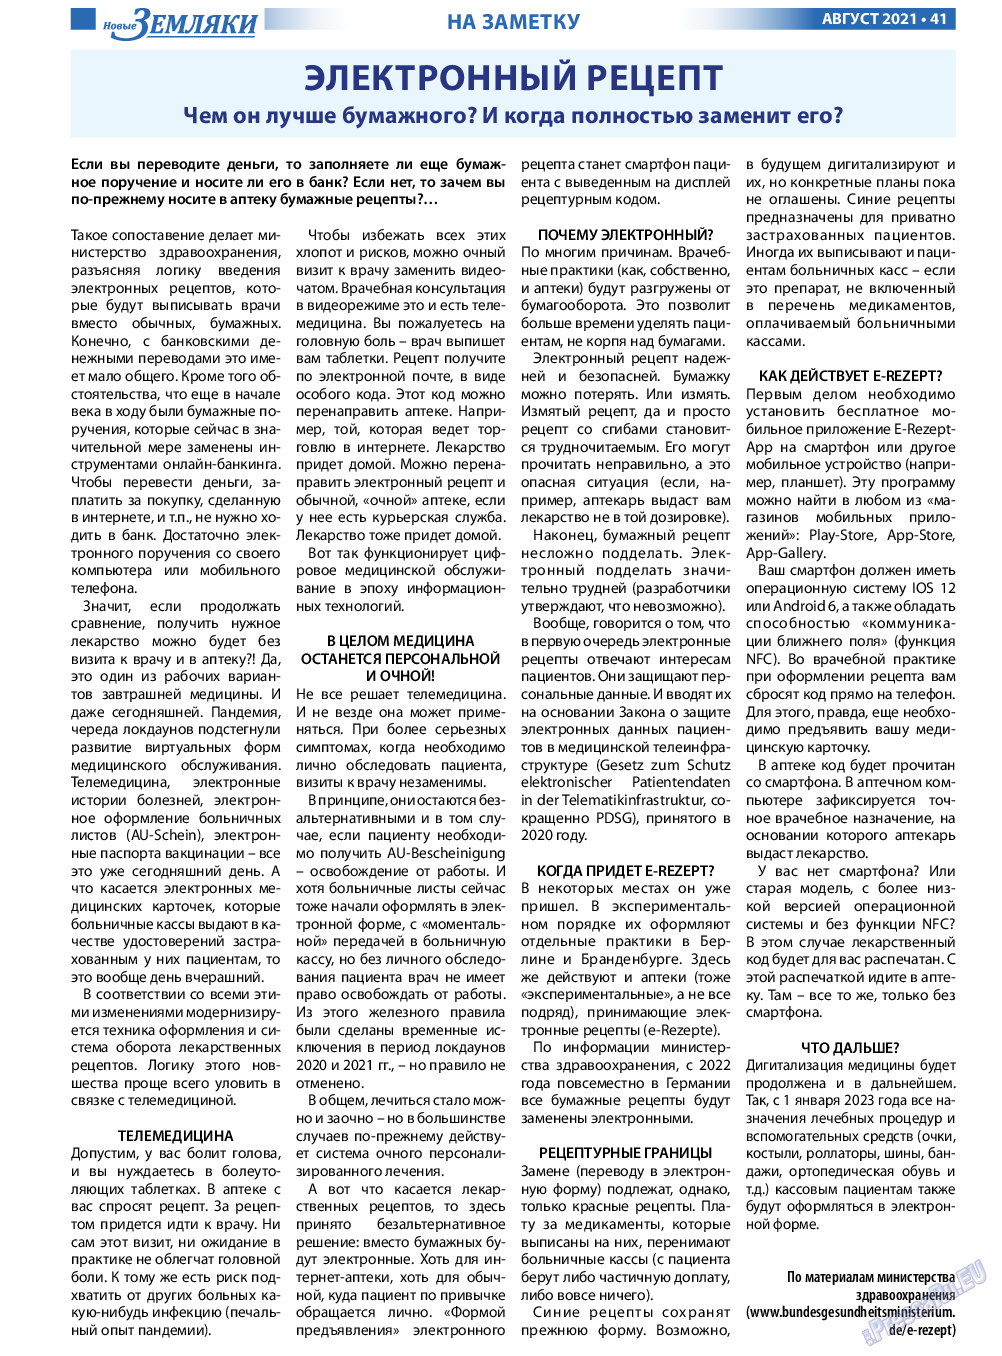 Новые Земляки, газета. 2021 №8 стр.41